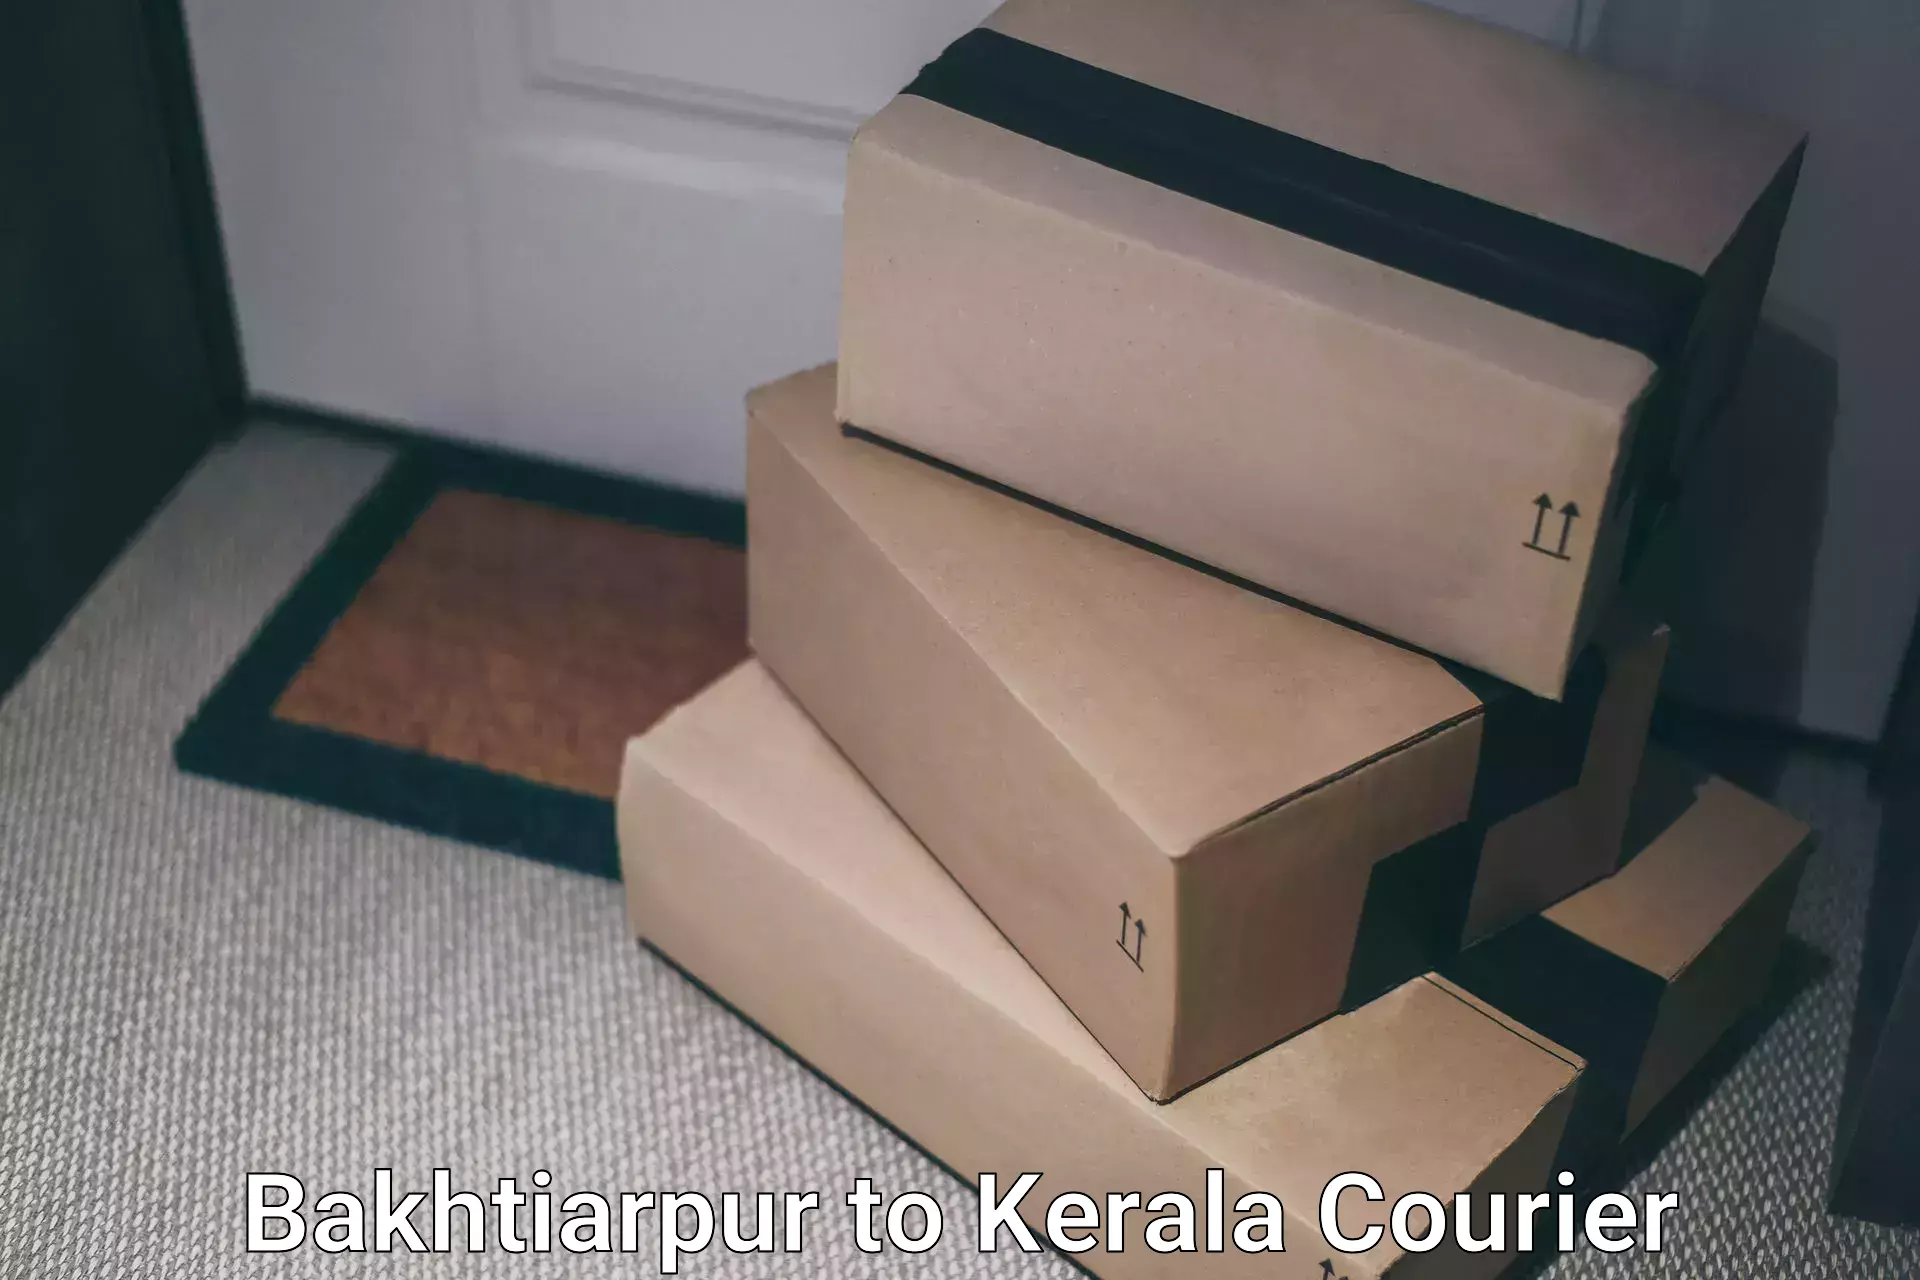 International courier networks Bakhtiarpur to Kottayam